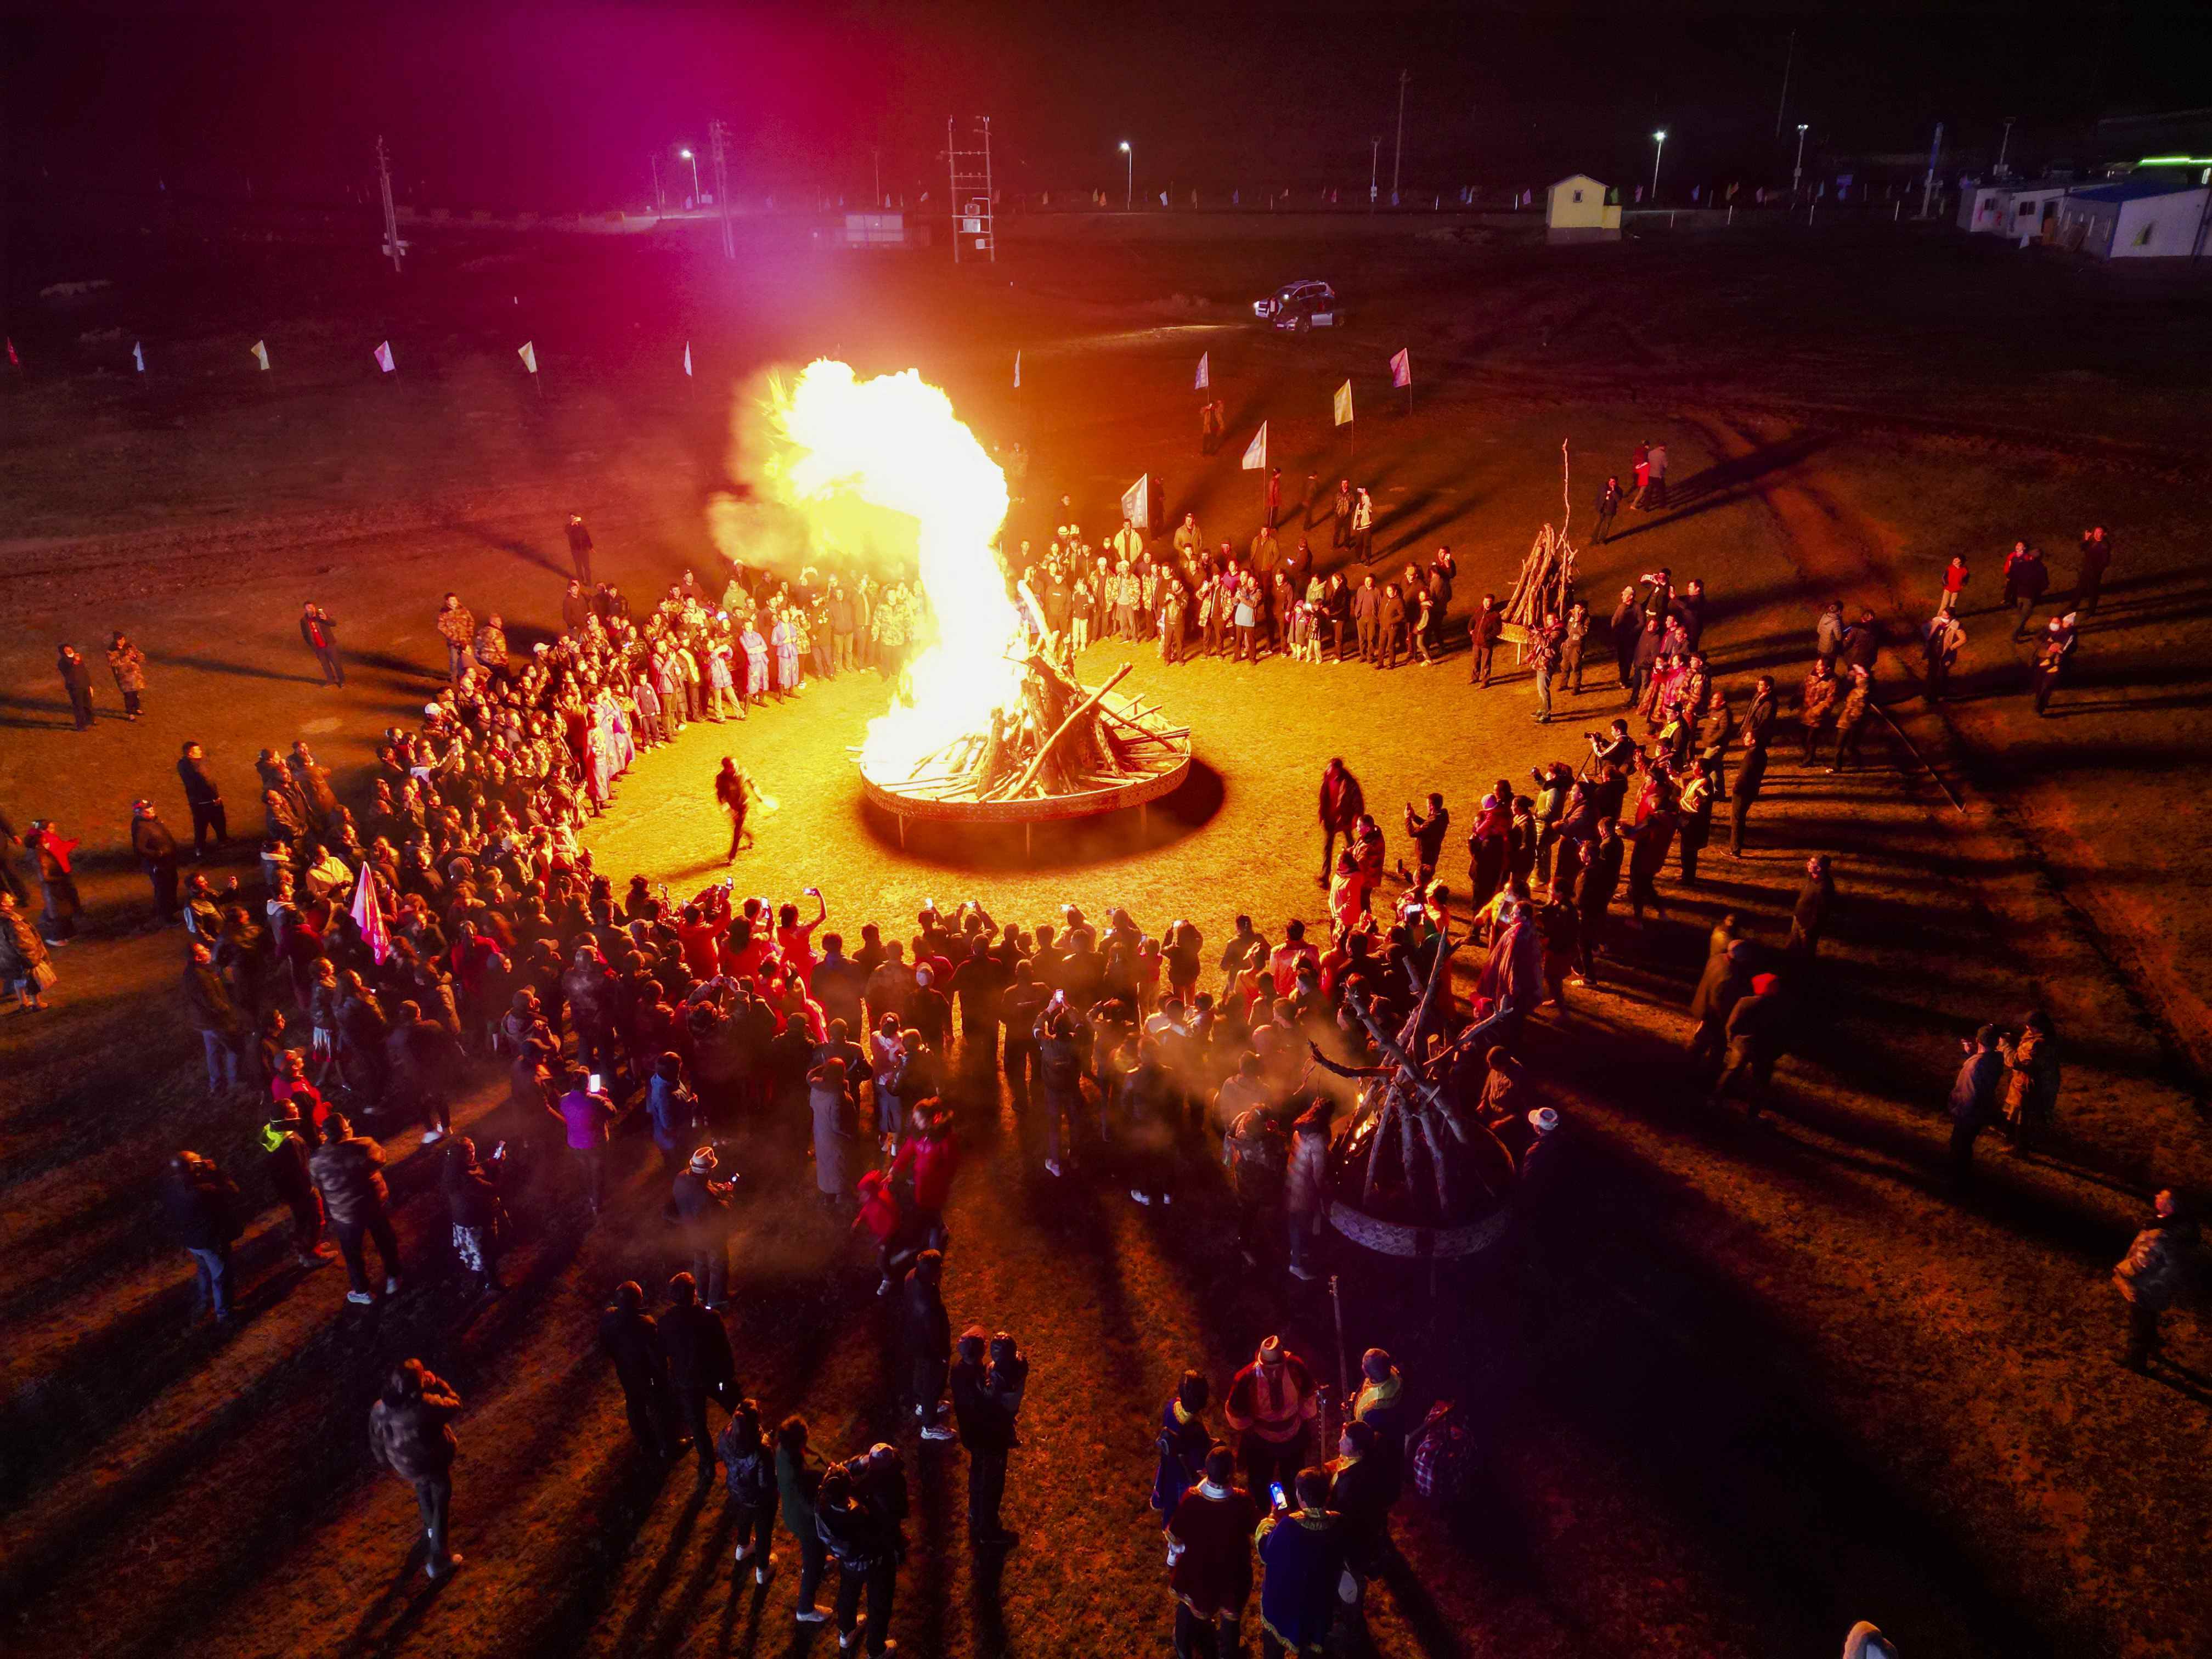 游客在和田地区策勒县板兰格景区举办的一场篝火晚会上载歌载舞（5月30日摄，无人机照片）。（摄影：新华社记者郝昭）